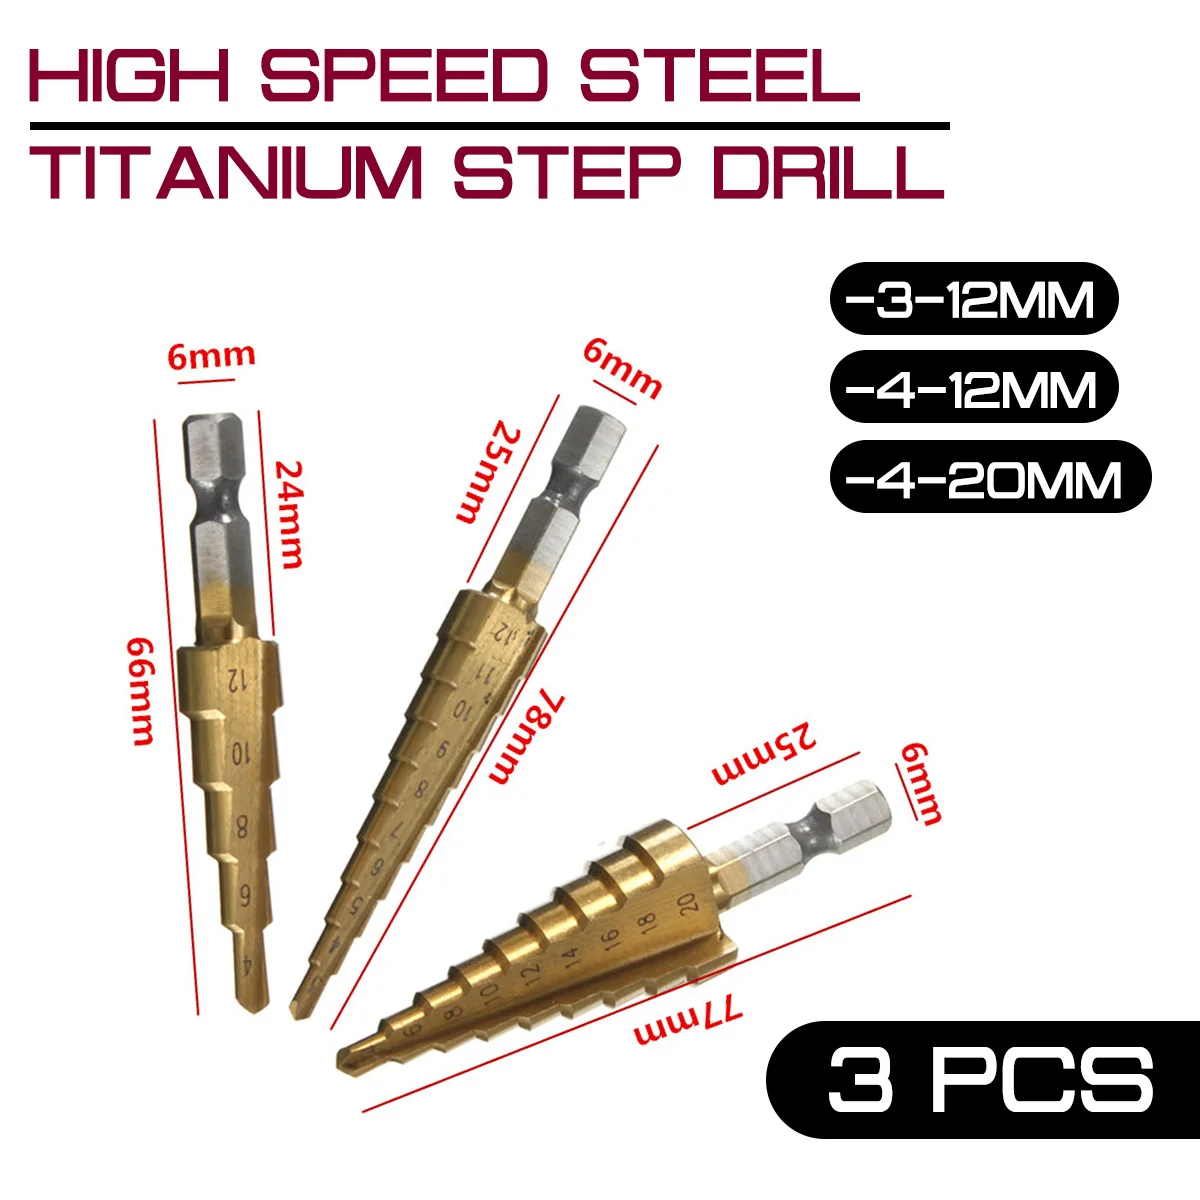 

3 шт. 3-12 мм 4-12 мм 4-20 мм высокоскоростные стальные титановые ступенчатые сверла из быстрорежущей стали для сверления дерева и металла электро...